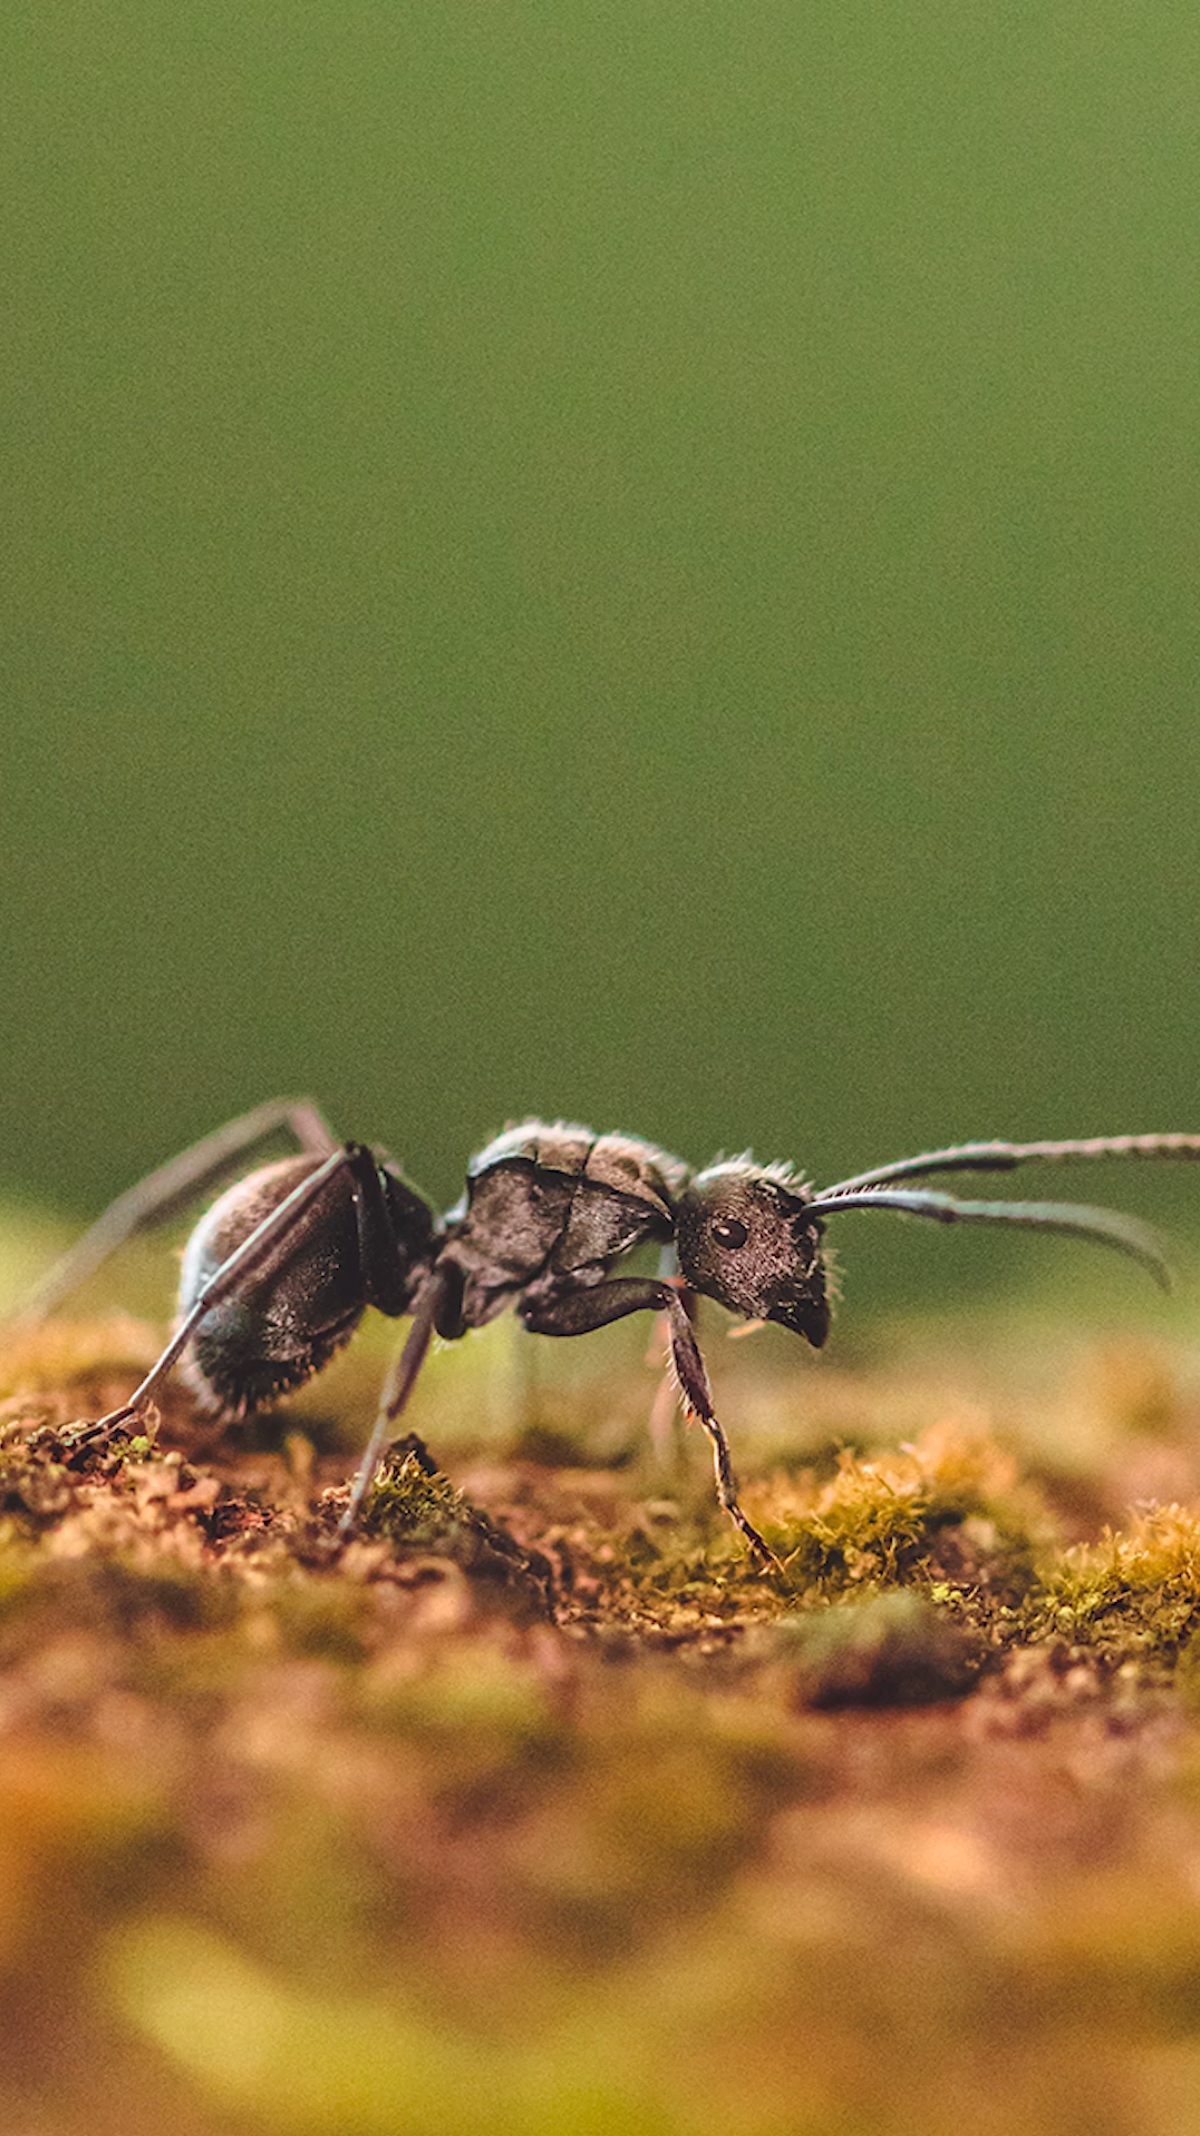 世界上最可爱的蚂蚁图片